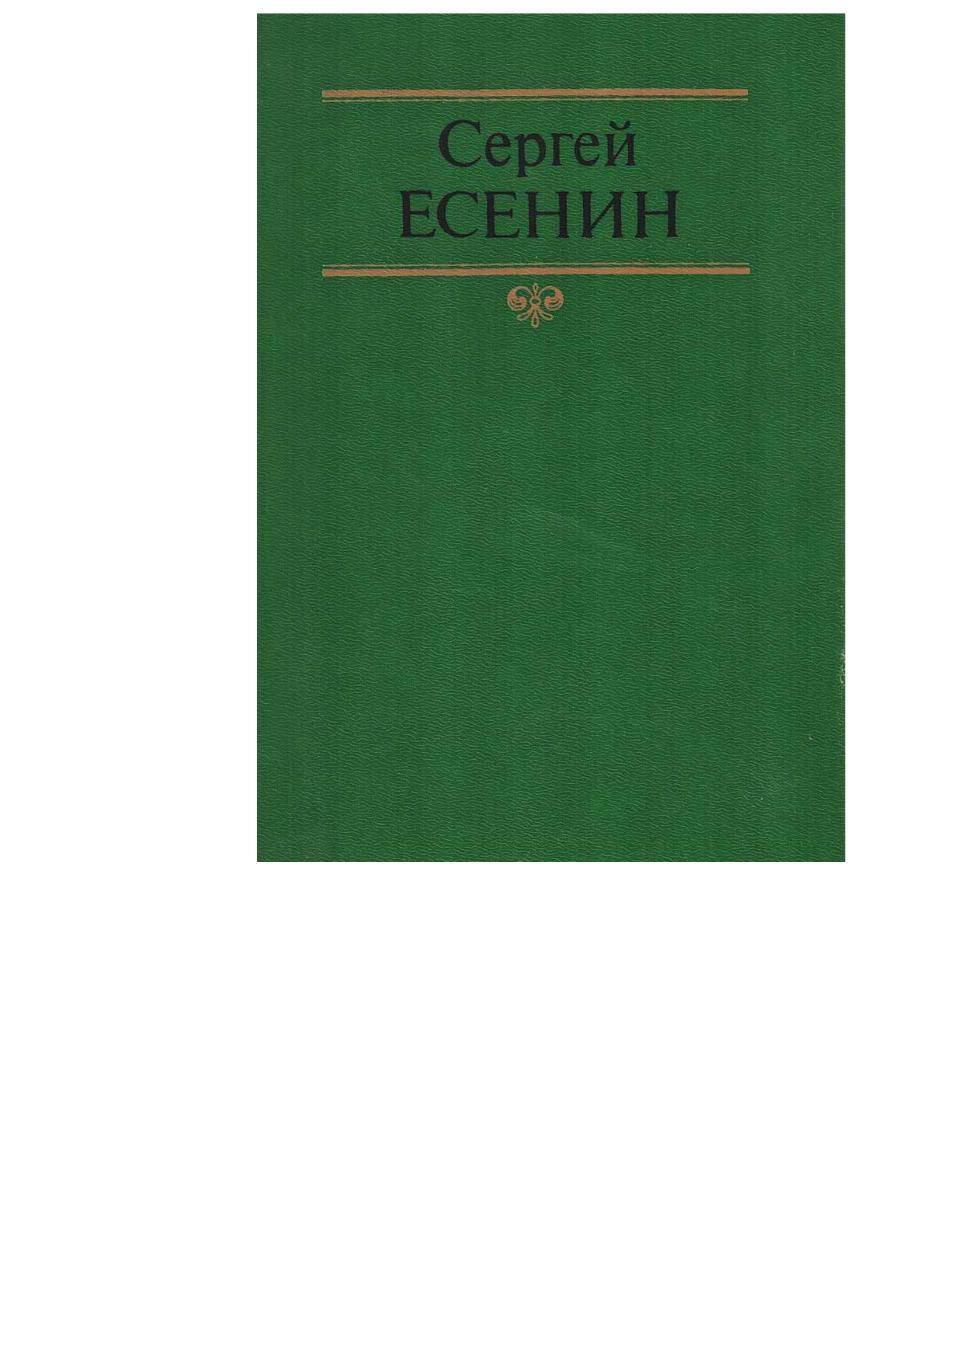 Сергей Есенин. Собрание сочинений в двух томах. Том 1.